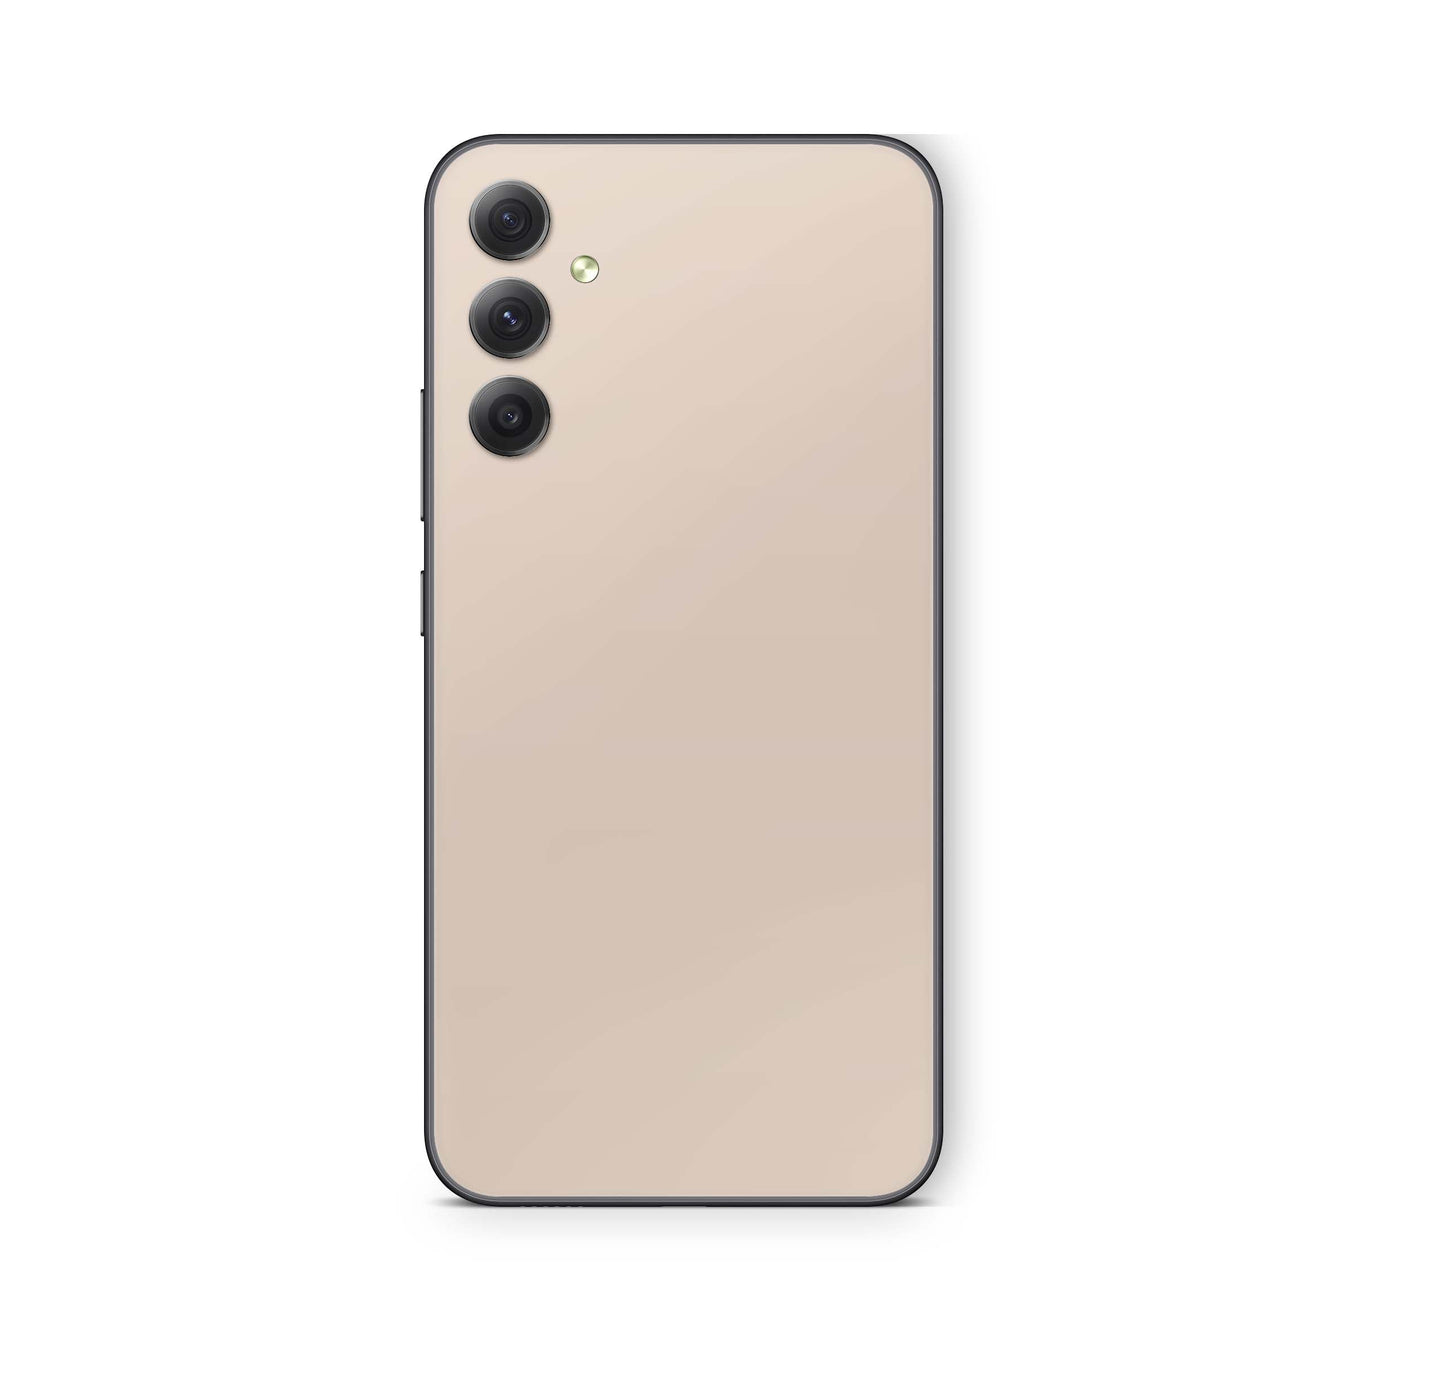 Samsung Galaxy A51 Skin Schutzfolie Aufkleber Skins Design Solid state cream Elektronik-Sticker & -Aufkleber skins4u   